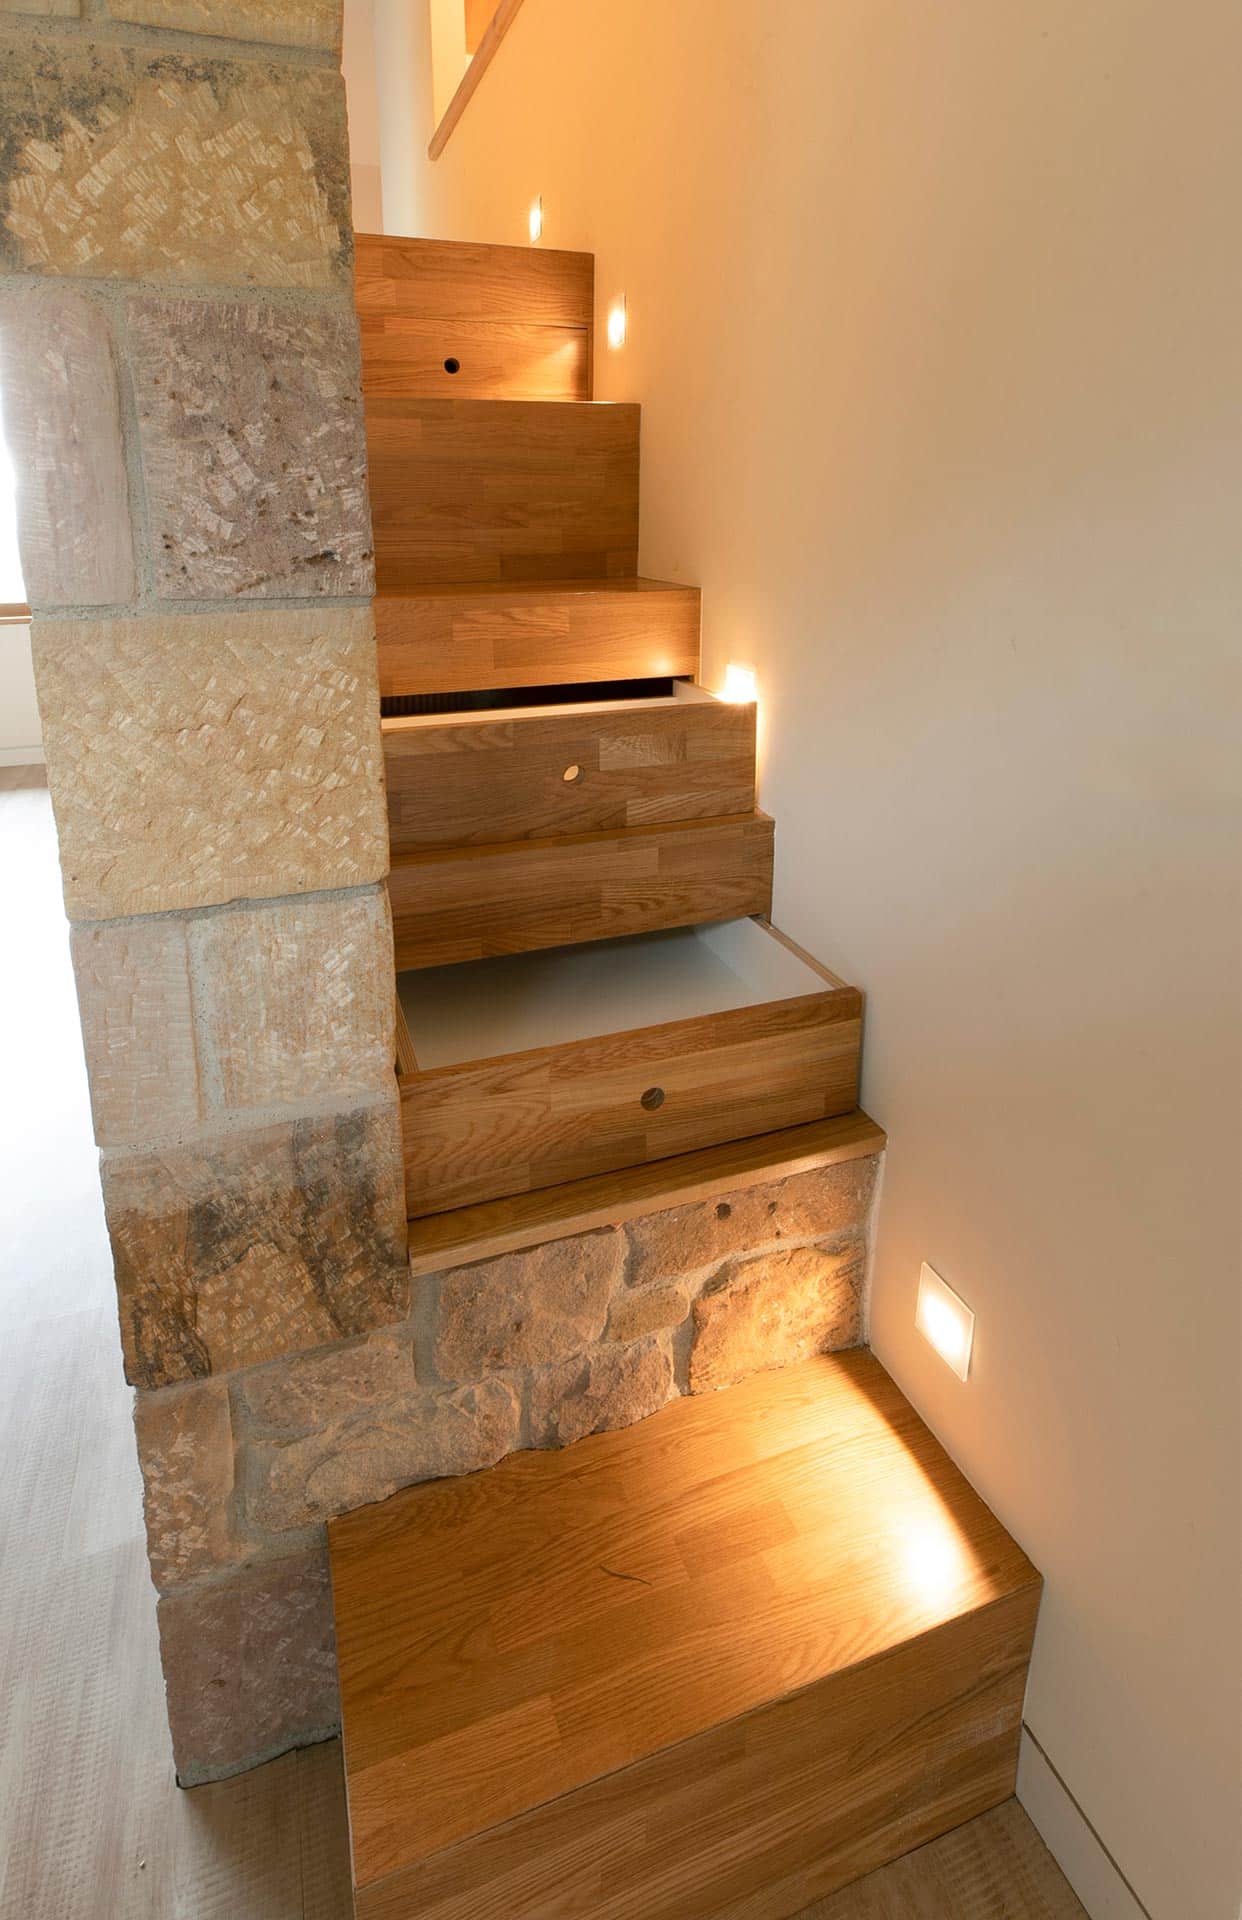 Escalera de madera y piedra en cabaña de lujo moderna en Proaño diseñada por Moah Arquitectos en Cantabria